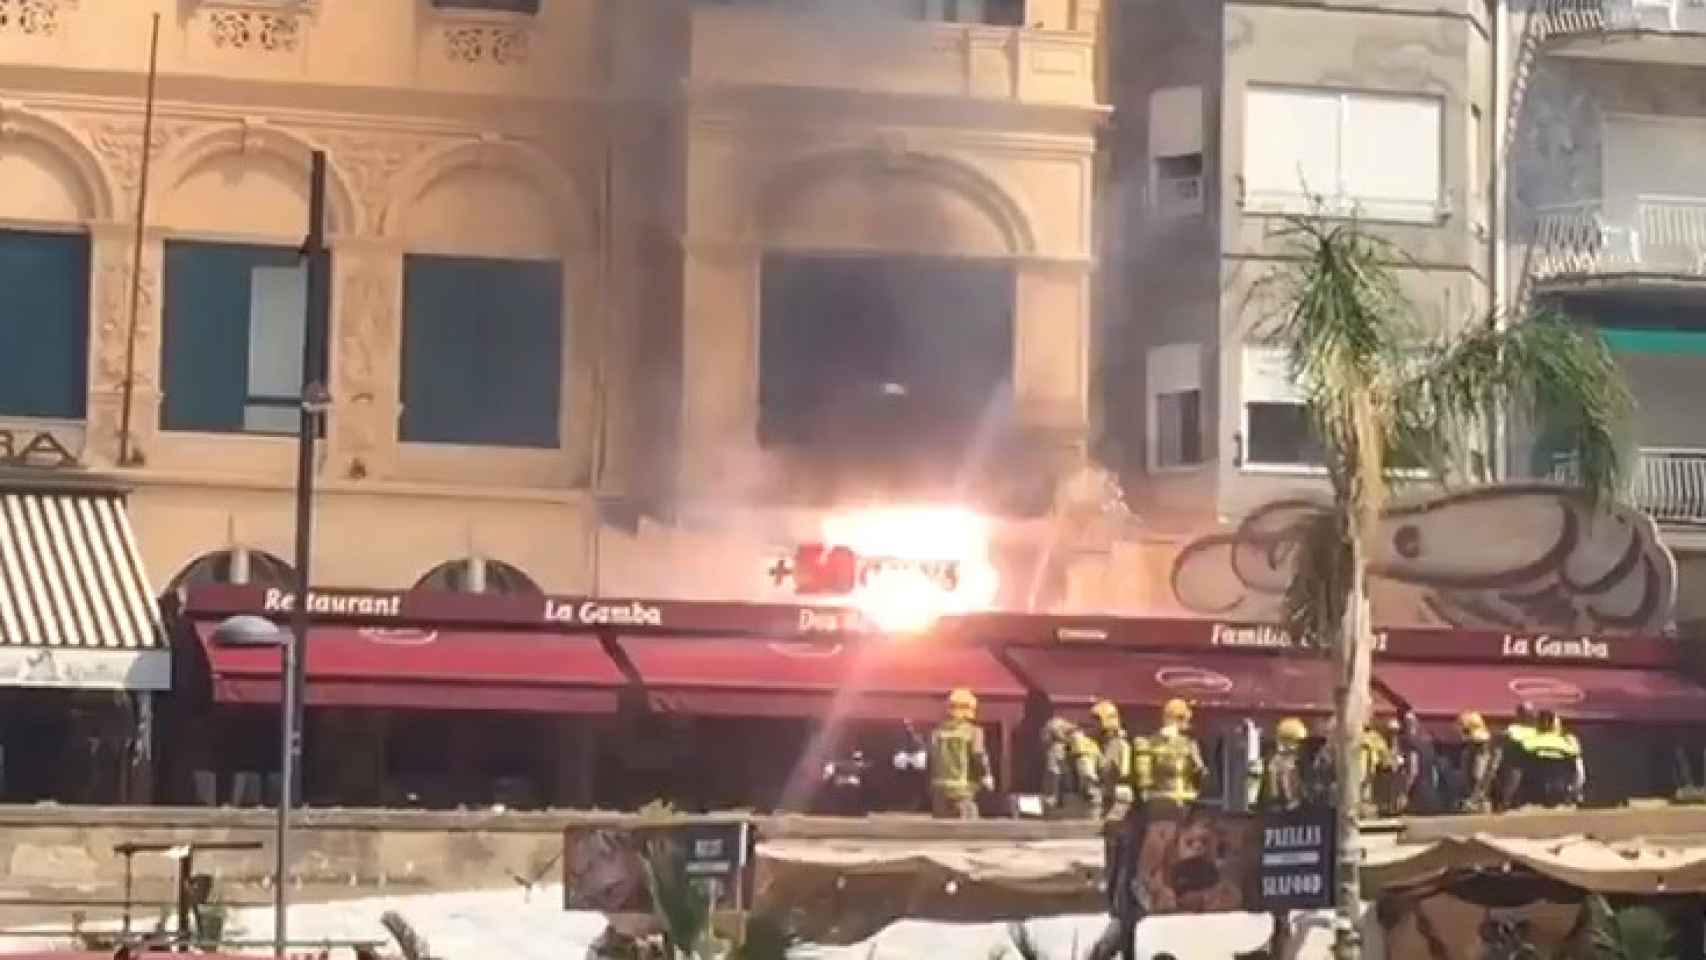 El momento de la explosión en el restaurante La Gamba de Palamós / CG